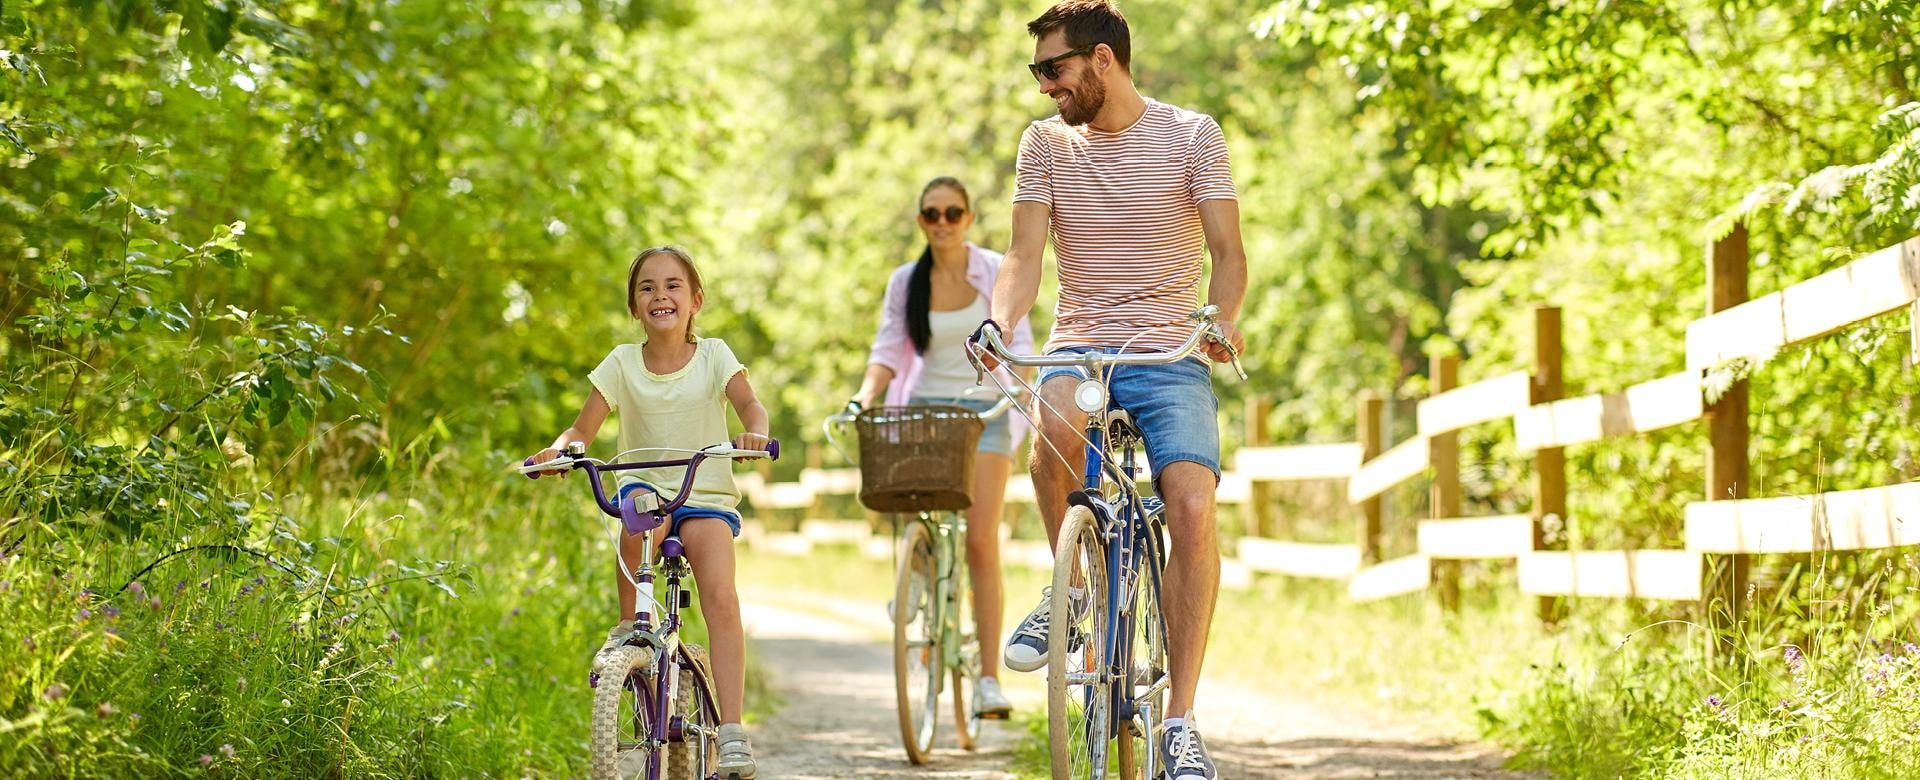 Familien-, Freizeit- und People-Konzept - glückliche Mutter, Vater und kleine Tochter reiten Fahrräder im Sommerpark